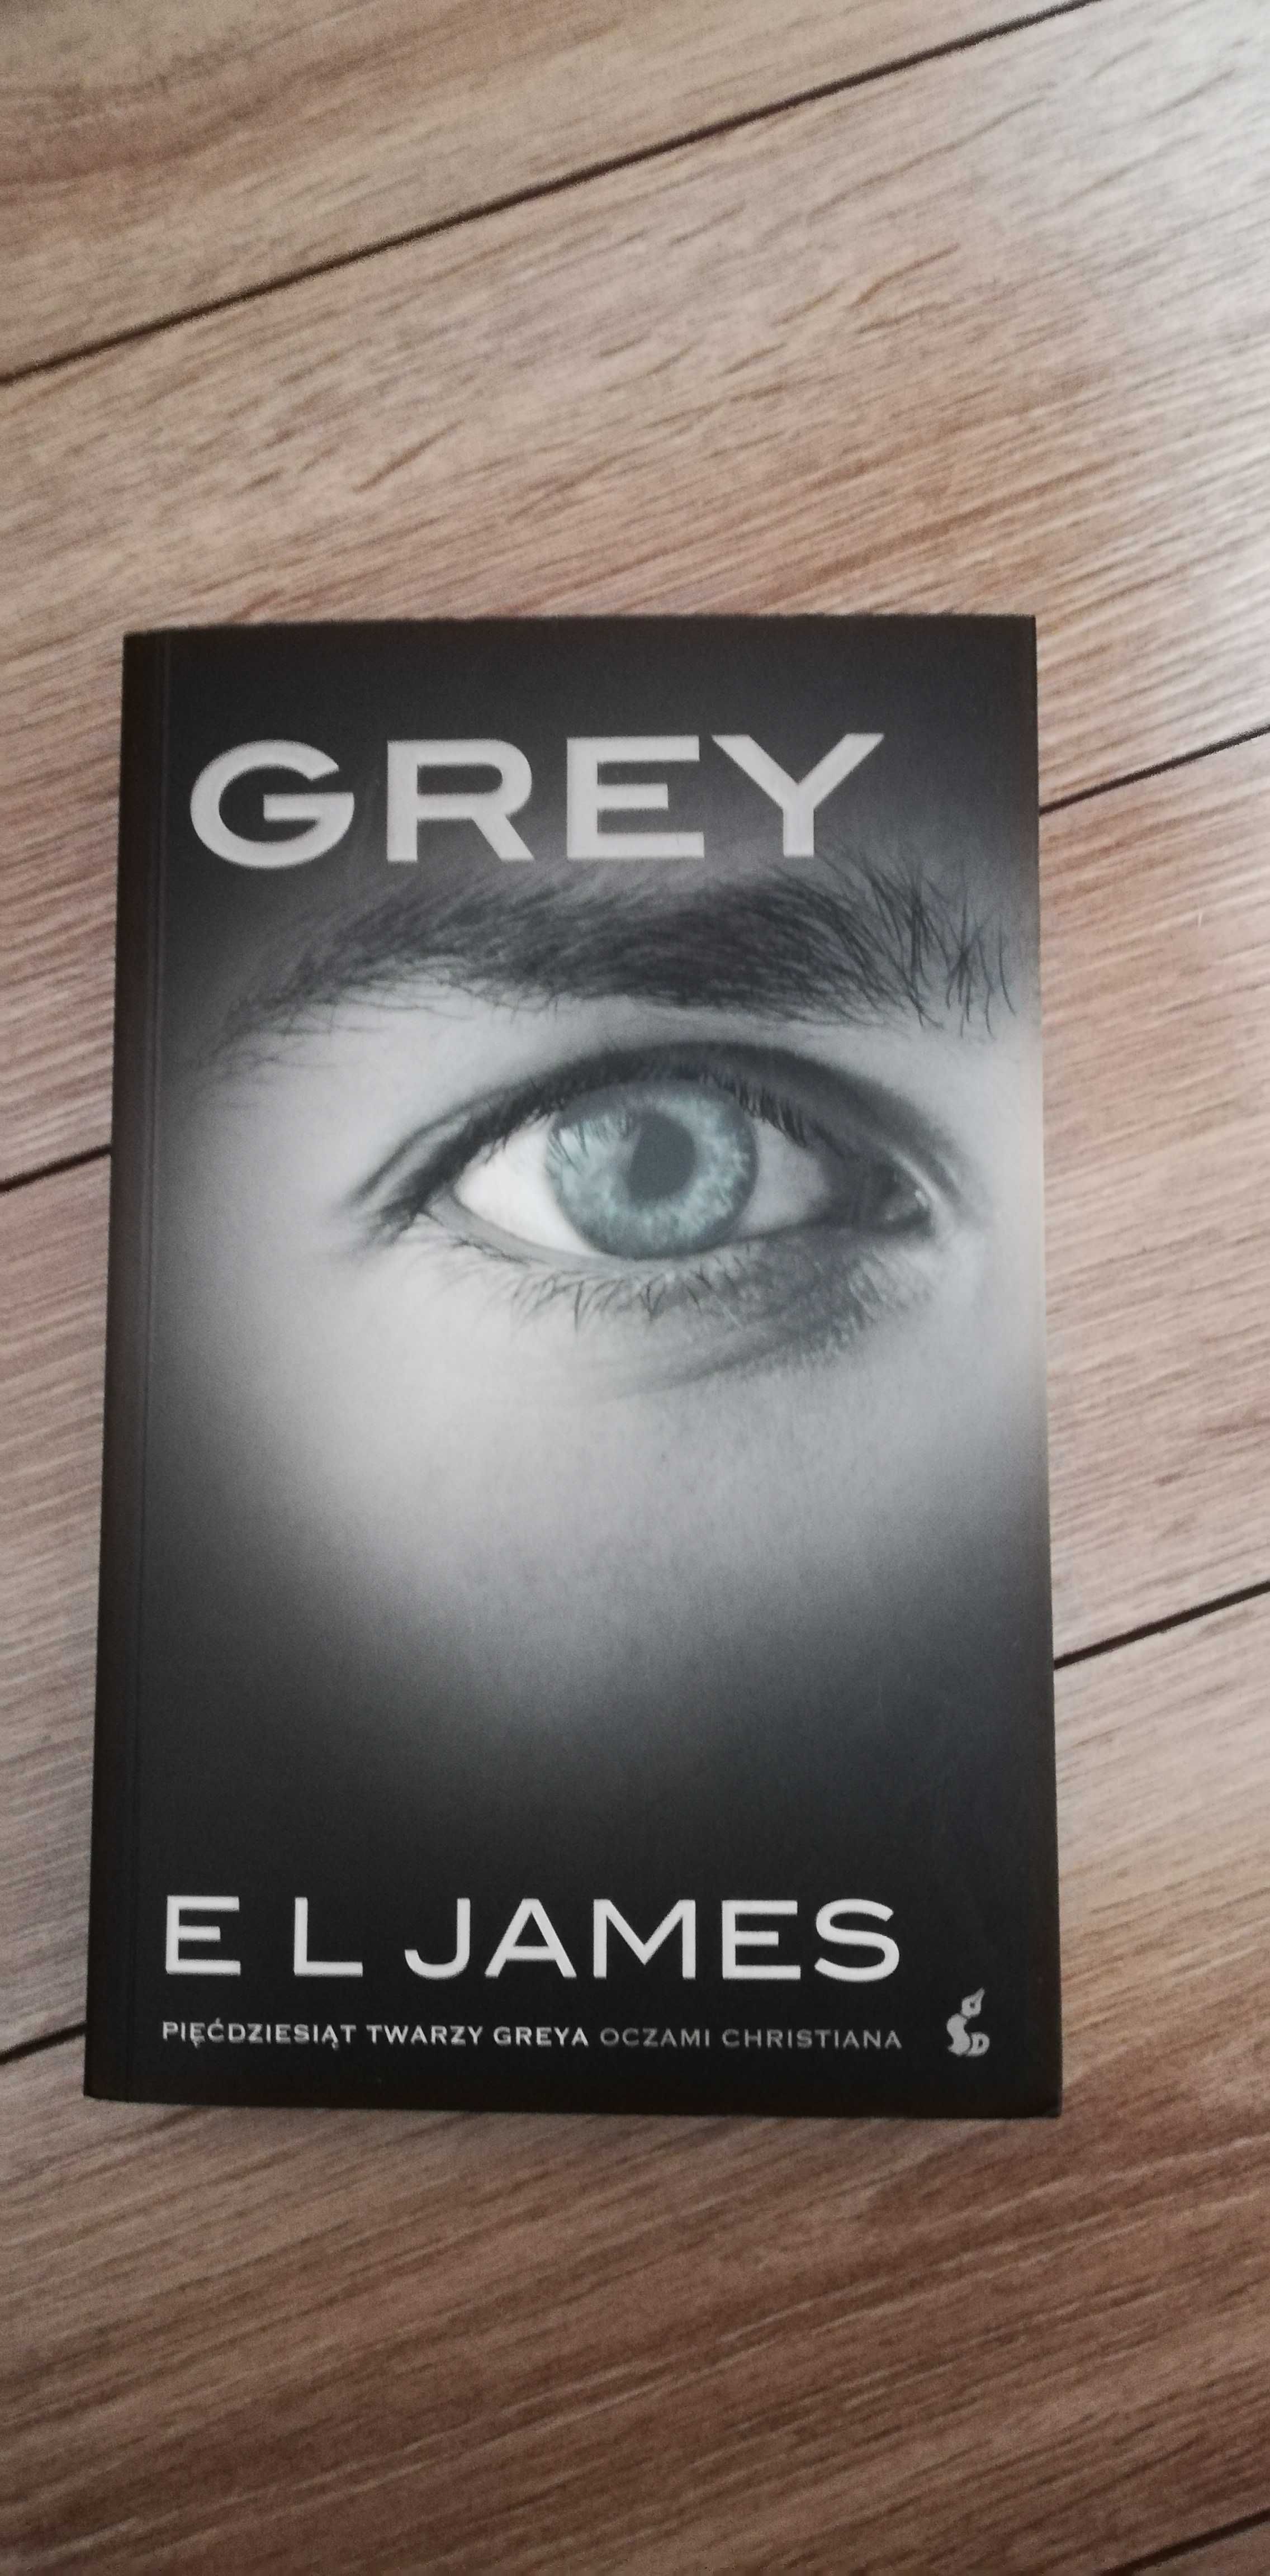 E L James "Pięćdziesiąt twarzy Greya oczami Christiana"